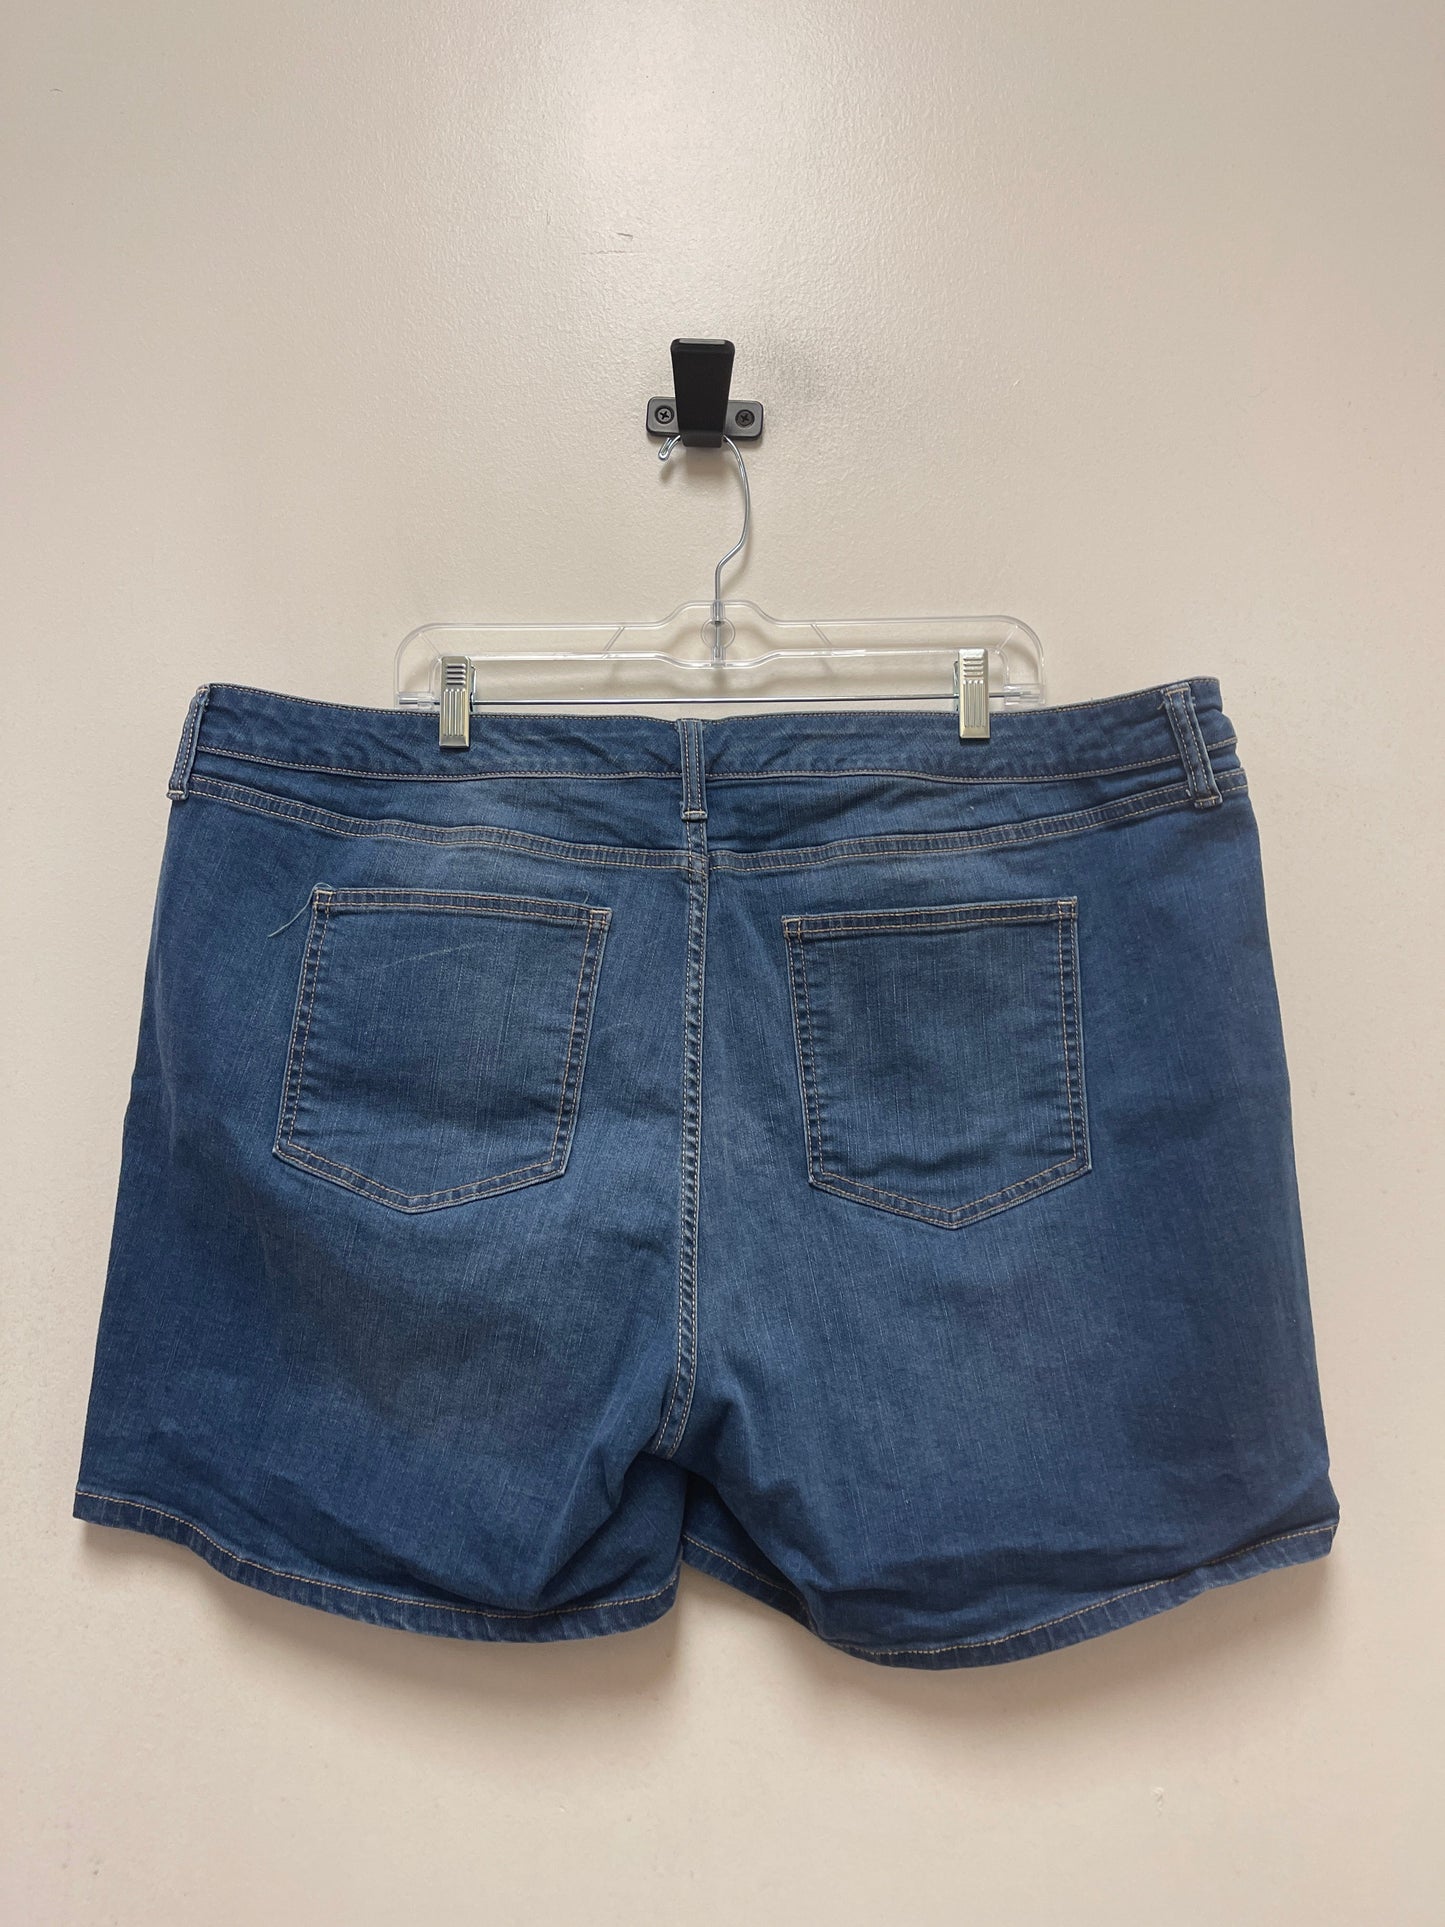 Blue Denim Shorts Ana, Size 22